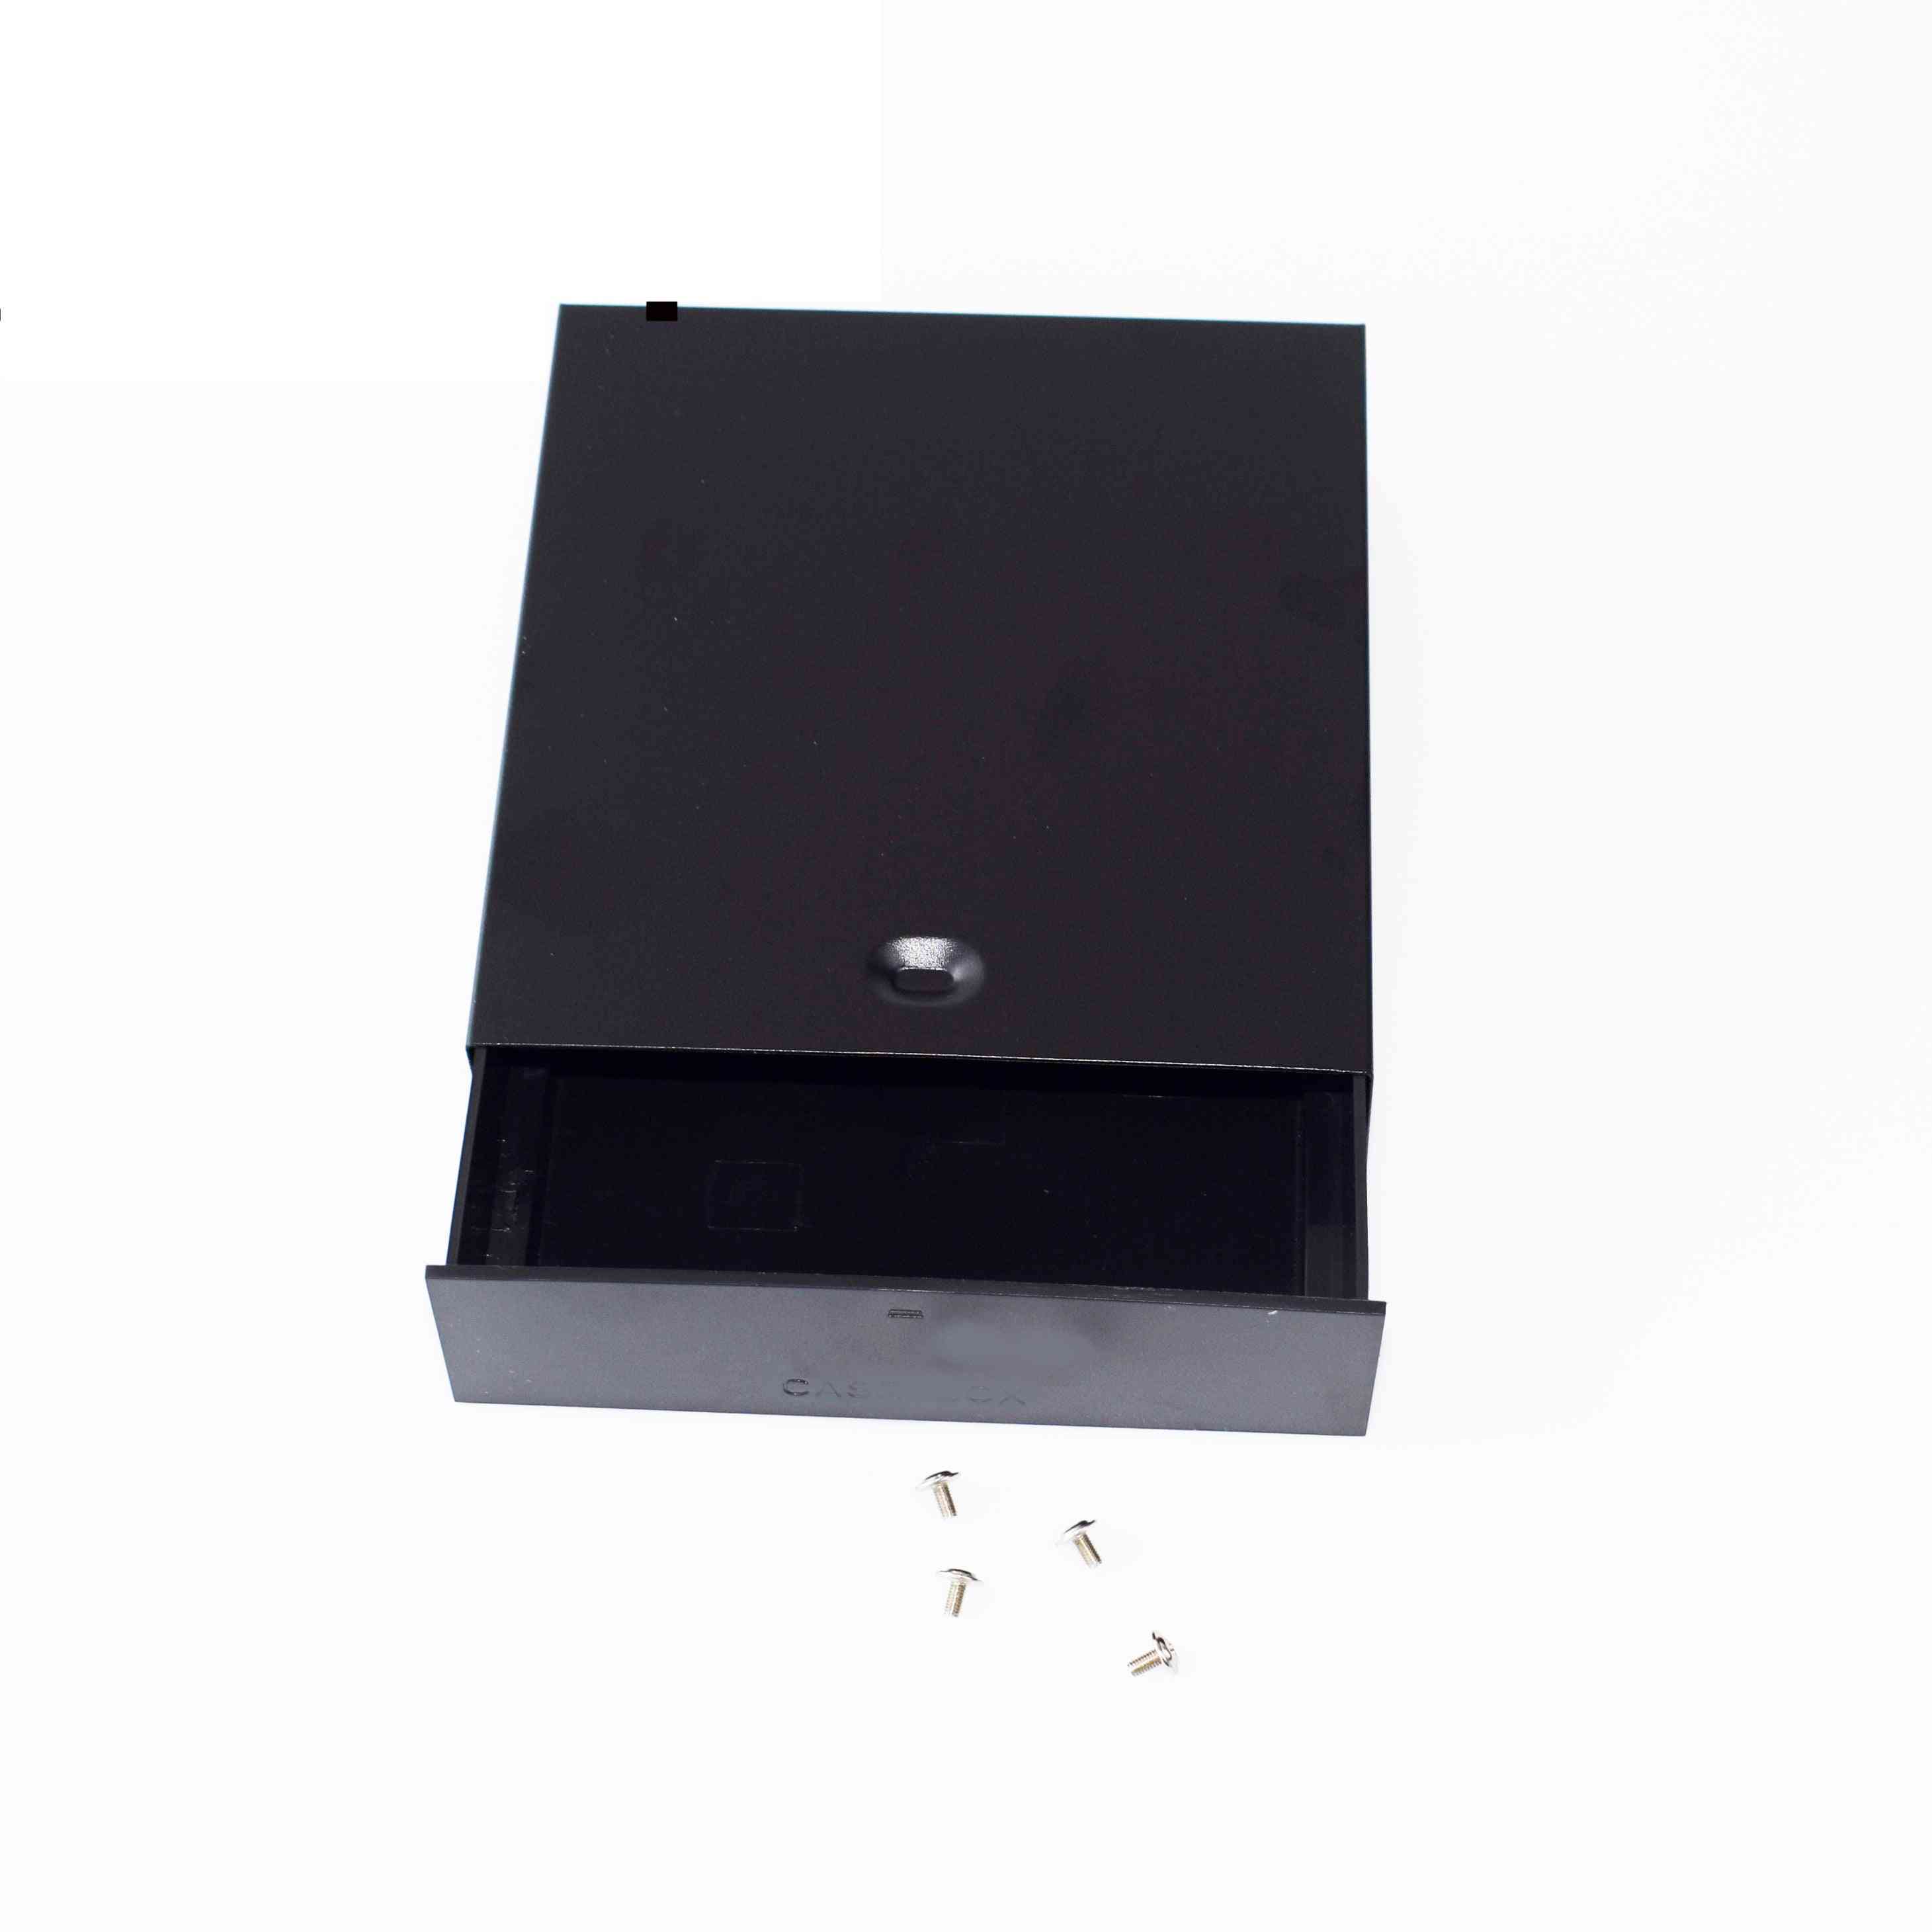 Noir ordinateur de bureau-atx / matx disque dur mobile-blank-rack tiroir plateau de stockage-case / boîte (5,25 